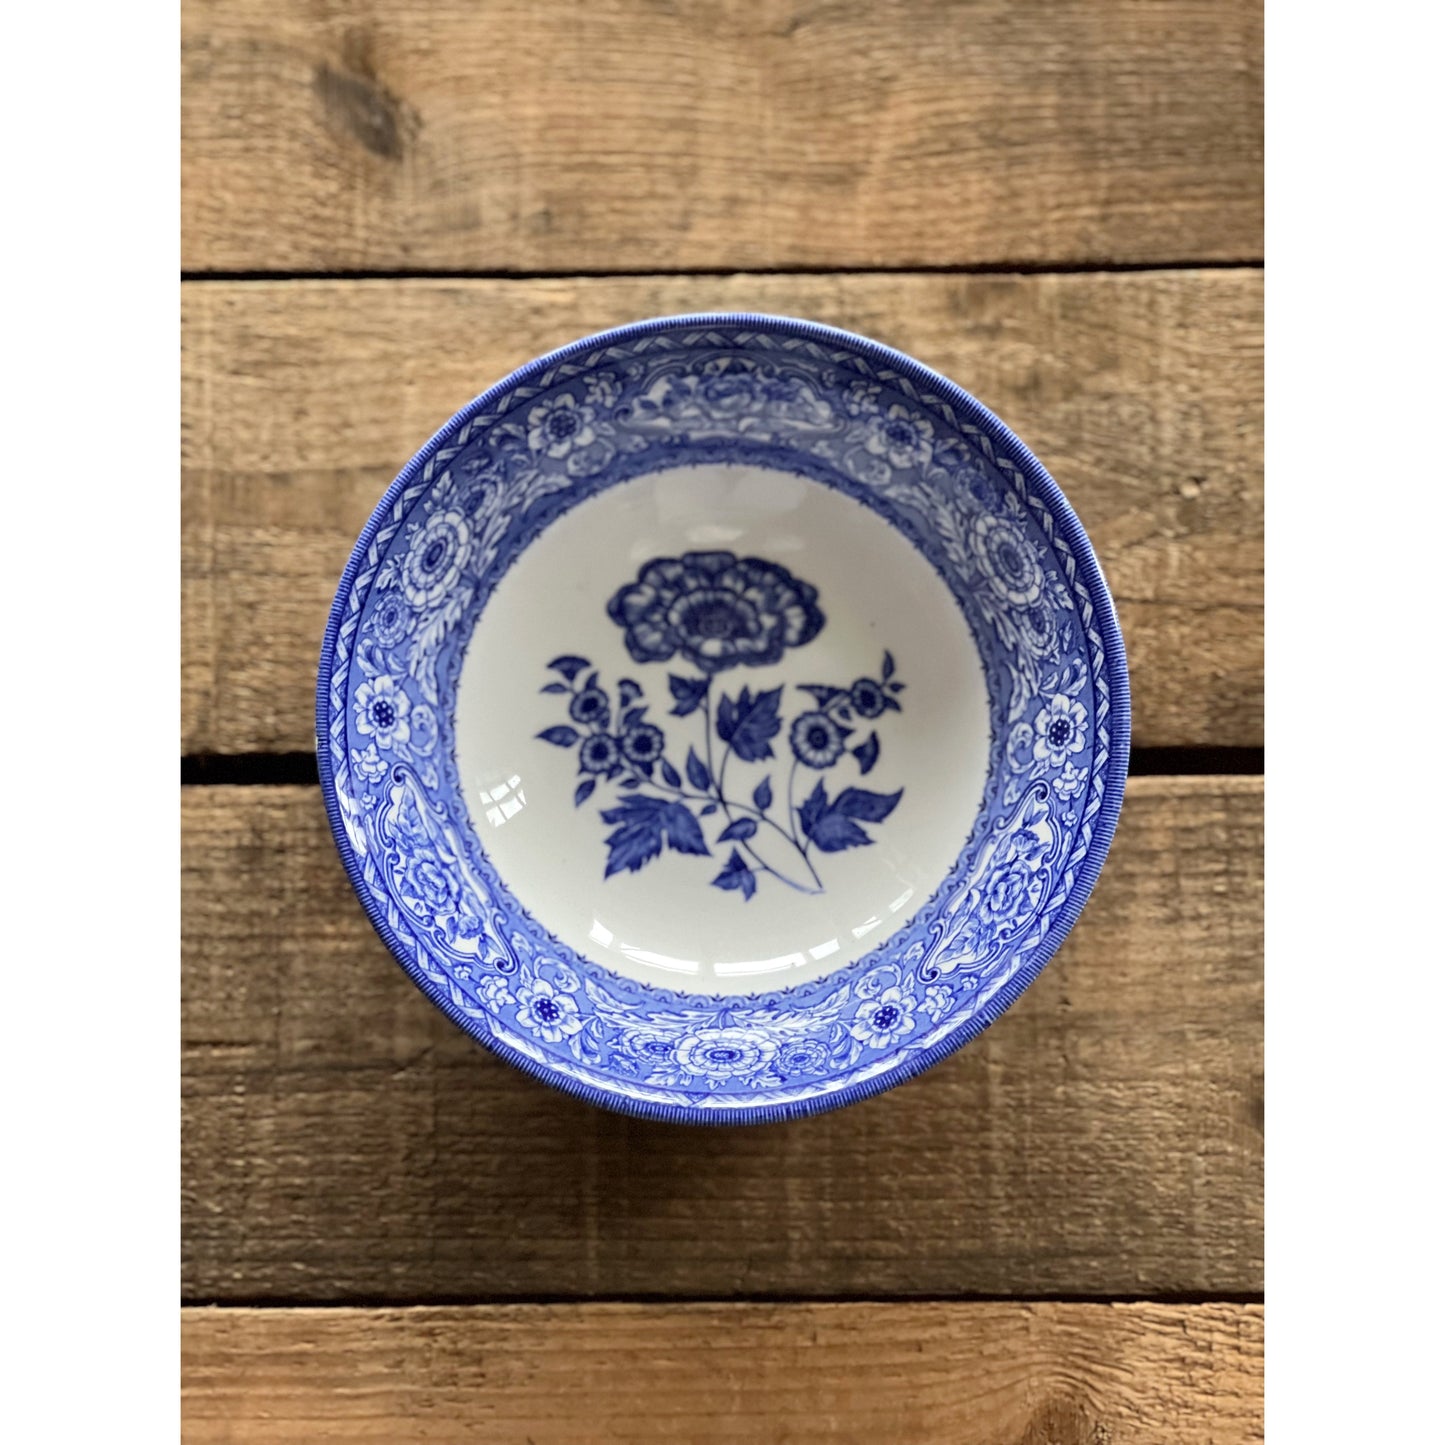 Queen's Rosemont Blue Cereal Bowl